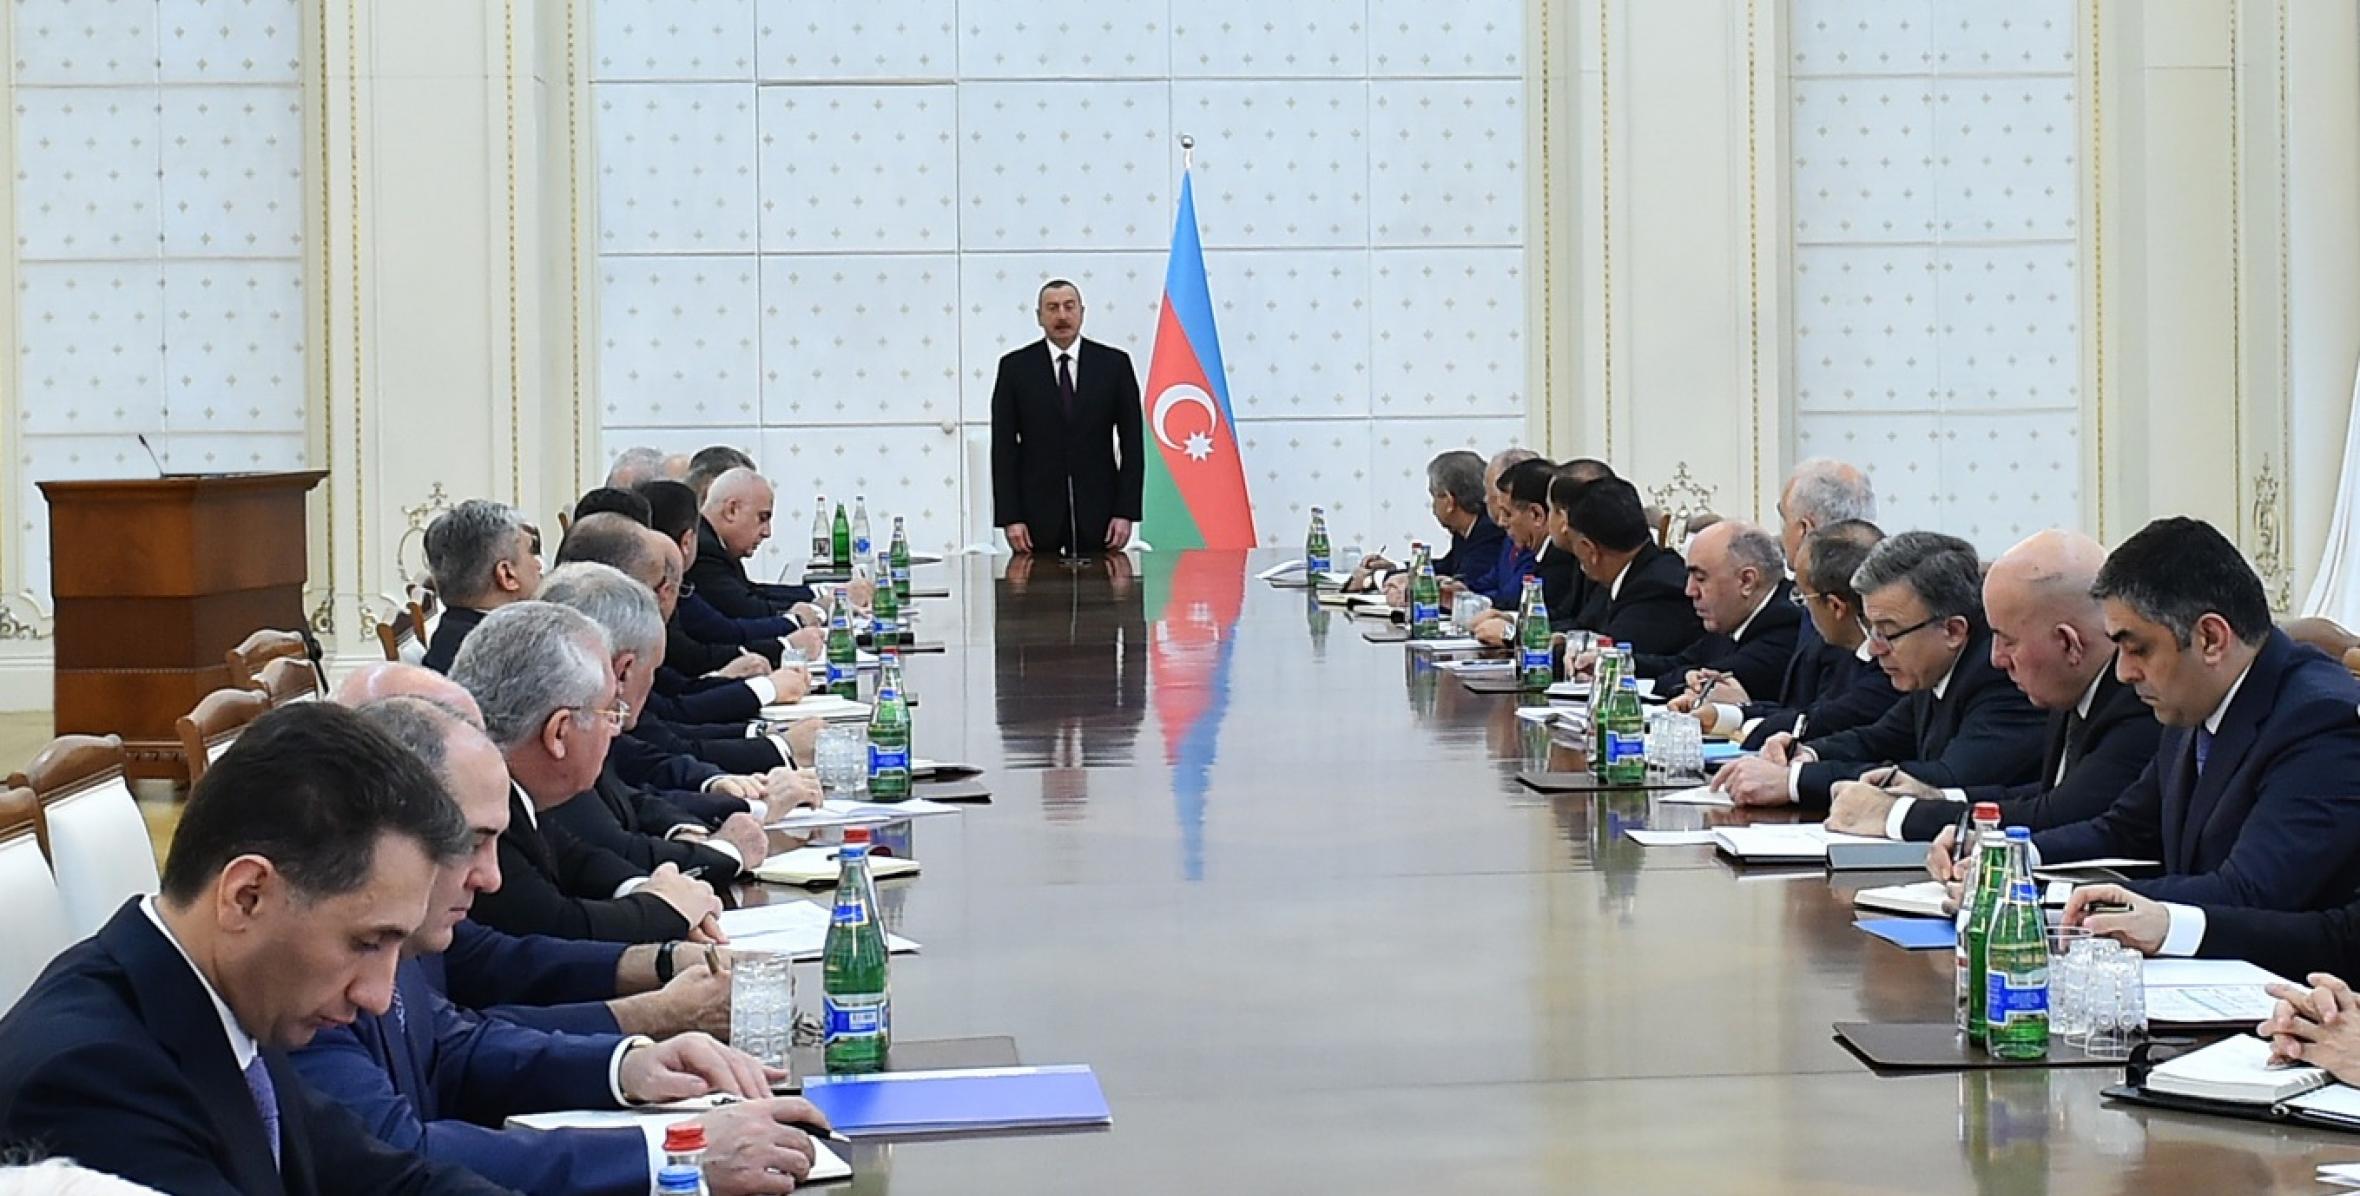 Вступительная речь Ильхама Алиева на заседании  Кабинета Министров, посвященное итогам социально-экономического развития в 2017 году и предстоящим задачам